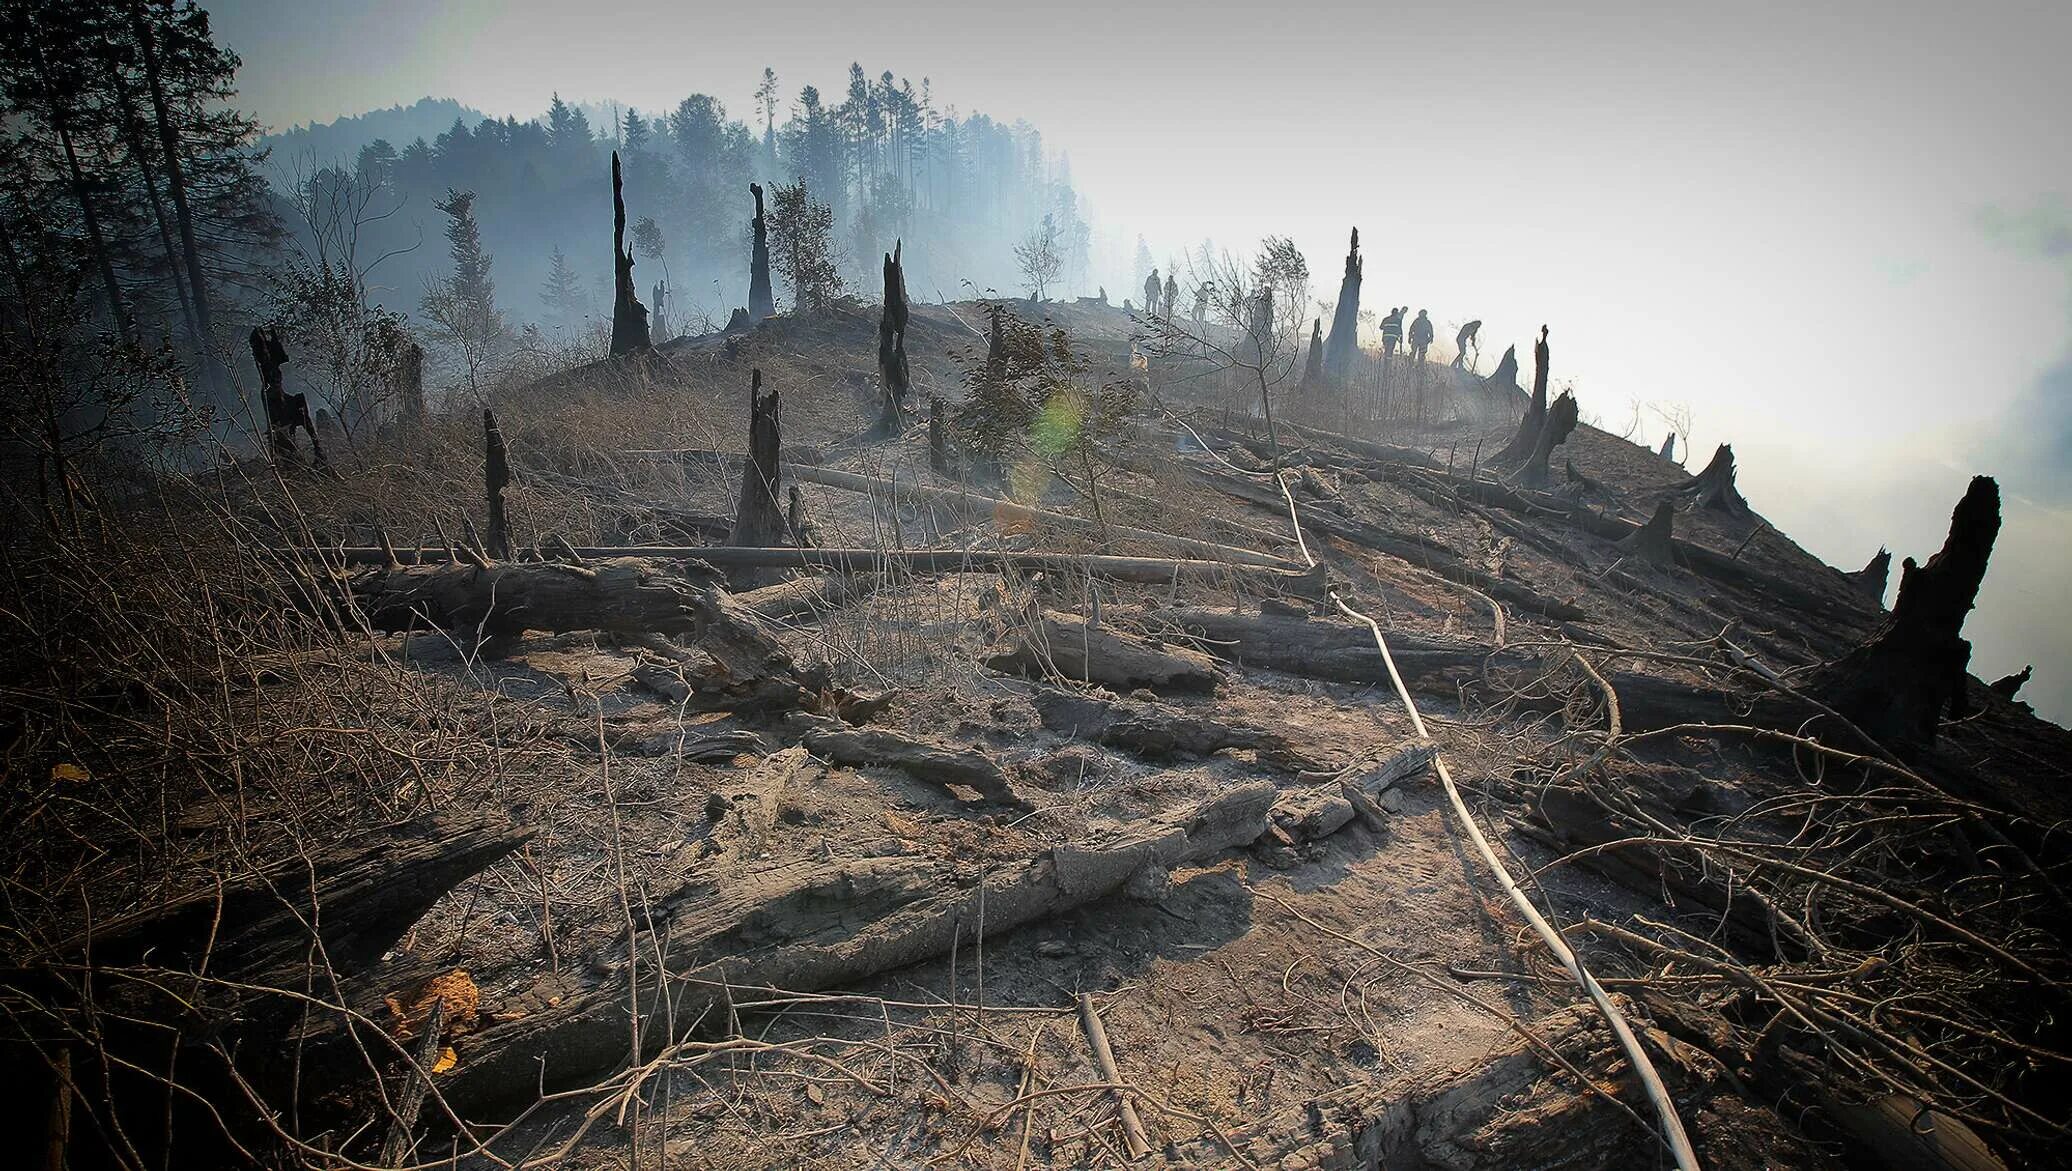 Выжженная земля. Лес после пожара. Выжженная земля после пожара. Земля после пожара в лесу.